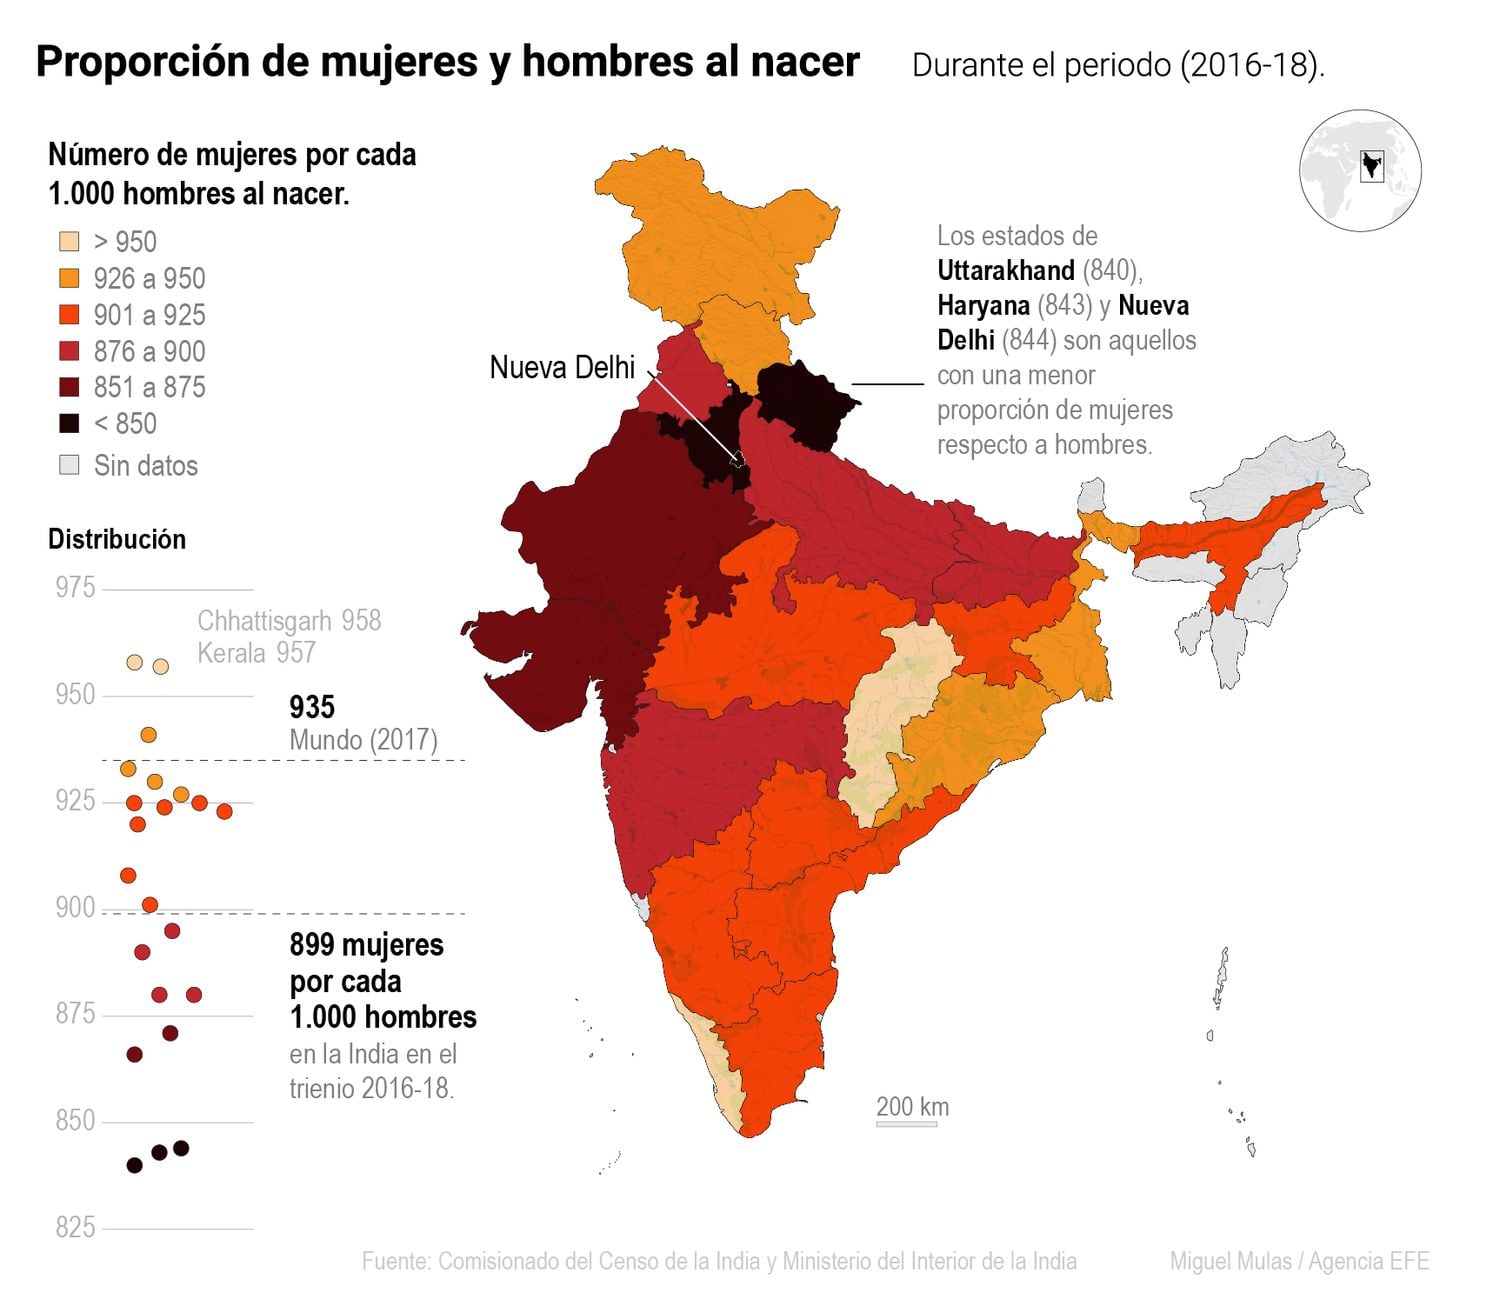 Proporción de hombres y mujeres al nacer por territorio en India